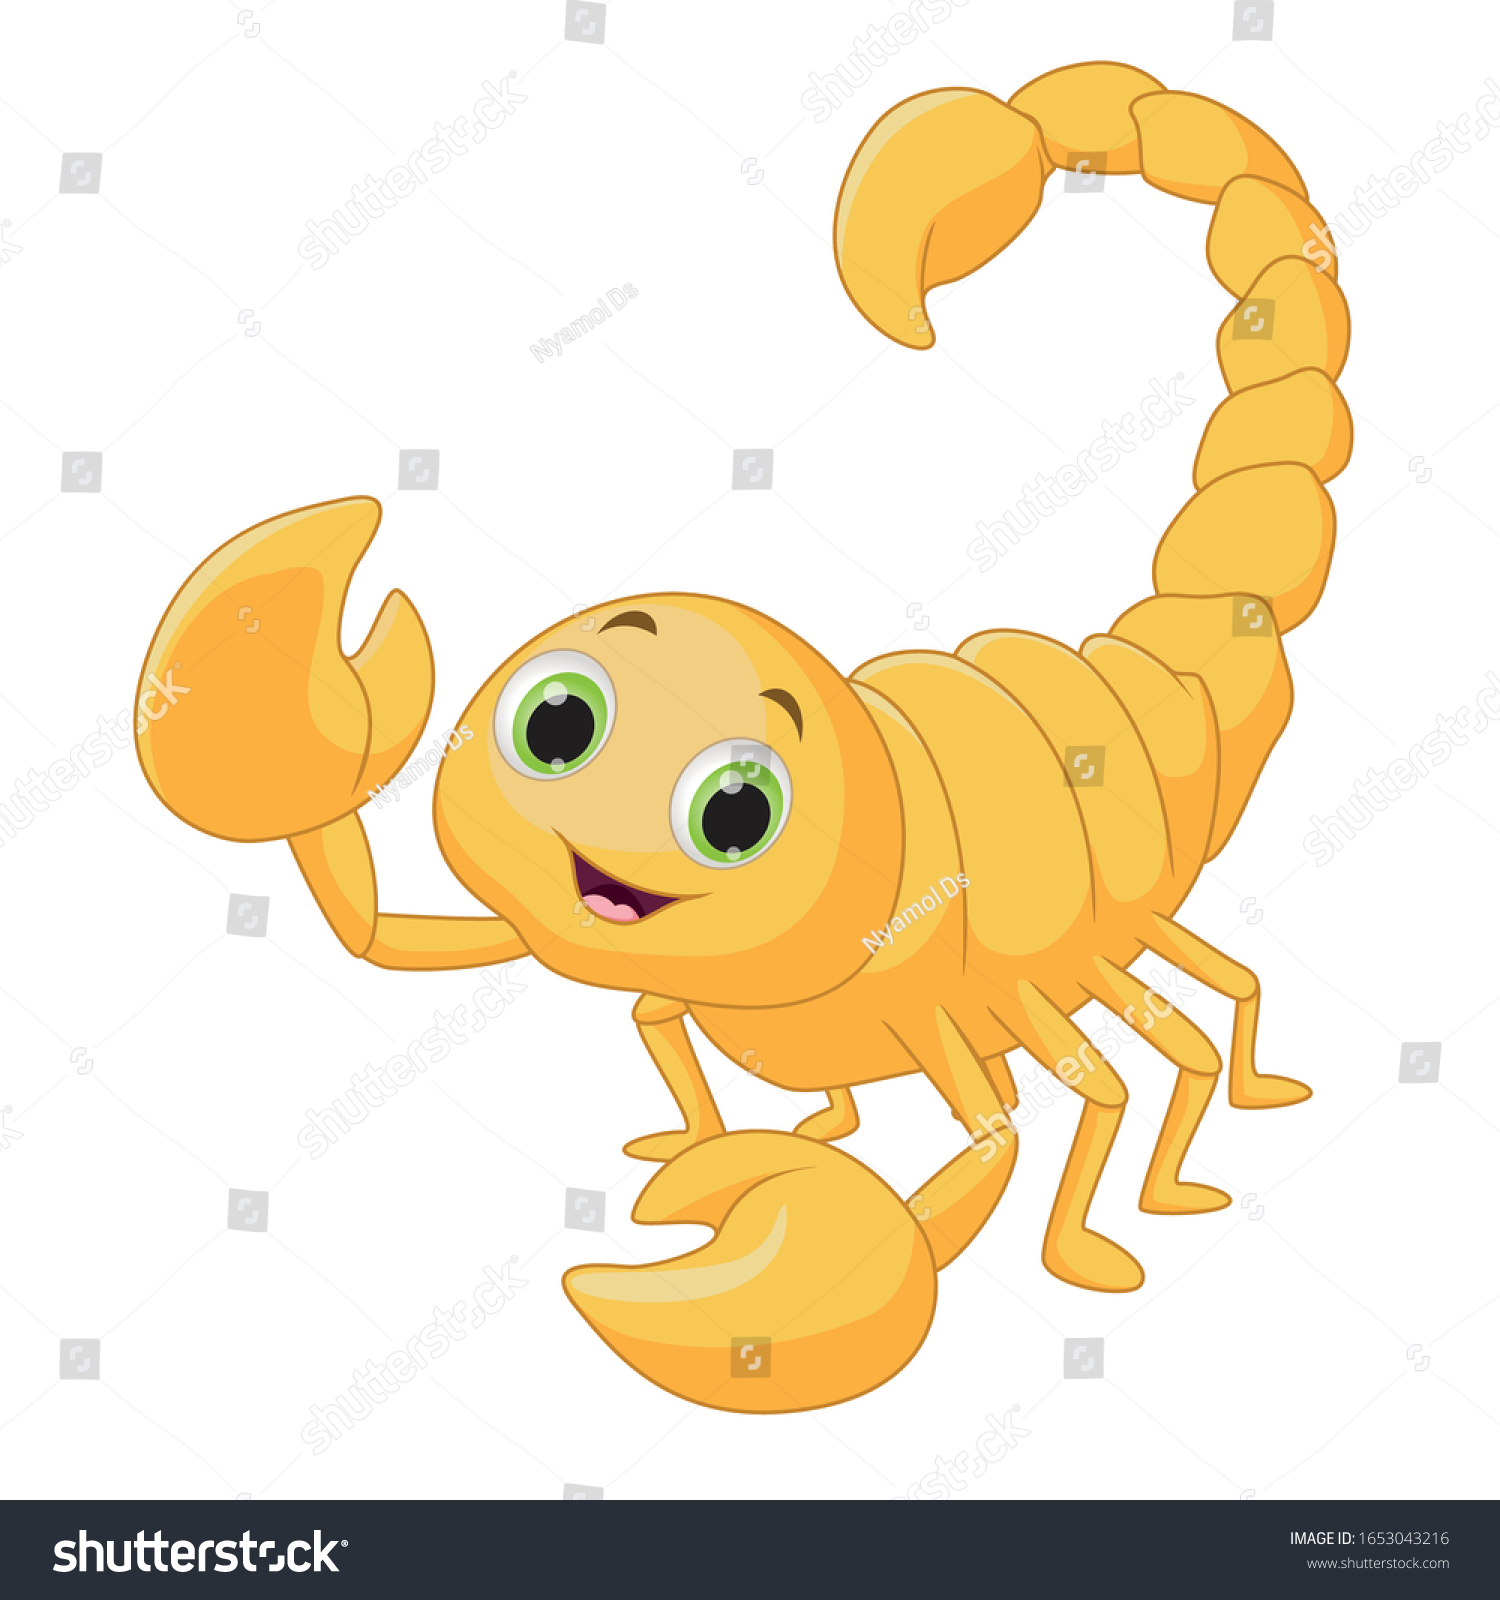 Scorpion cartoon